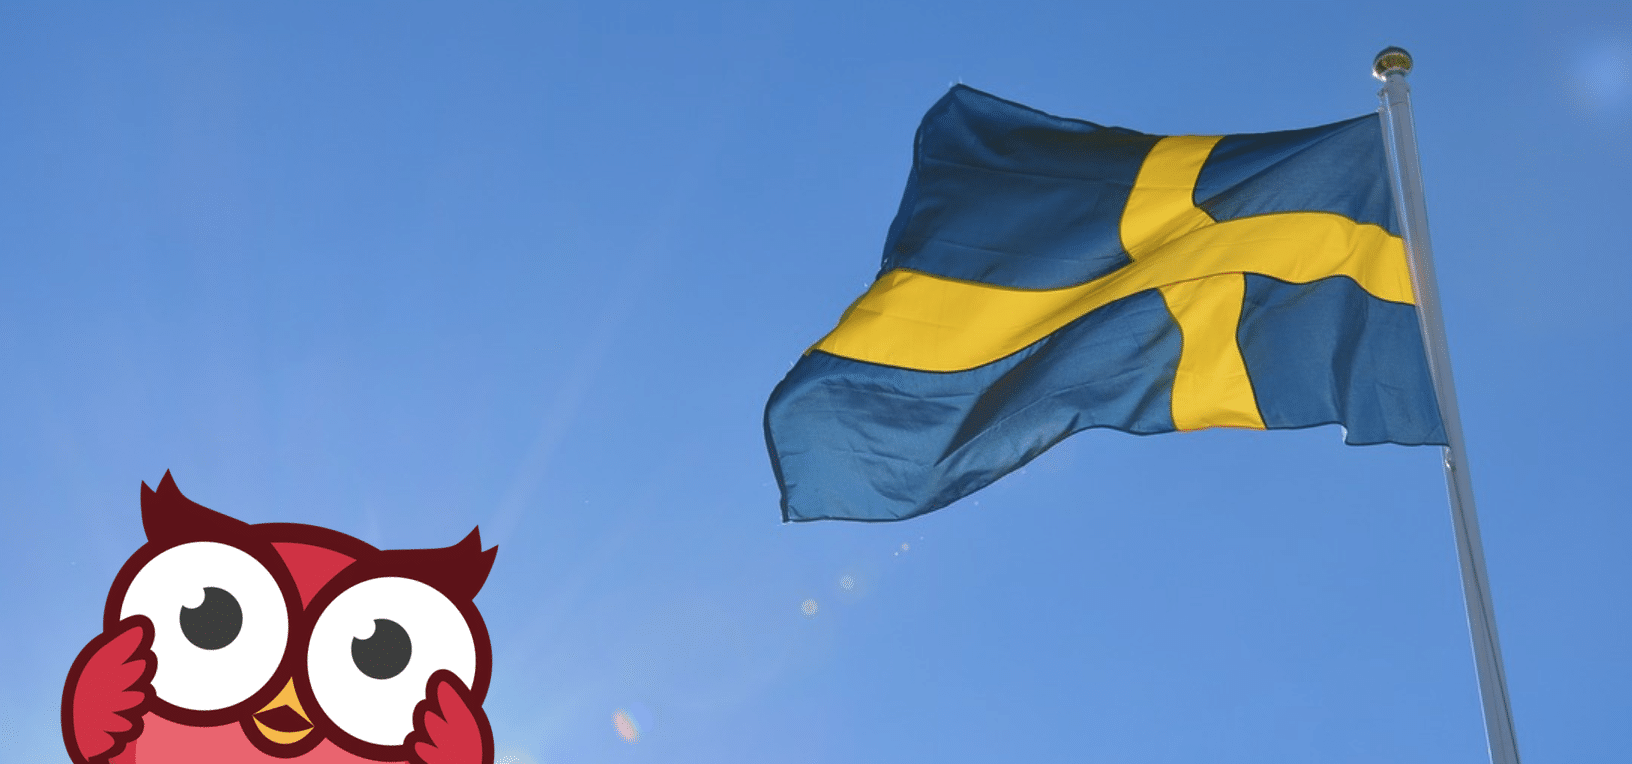 Vilka blir största parti – se bästa odds på Riksdagsvalet 2018